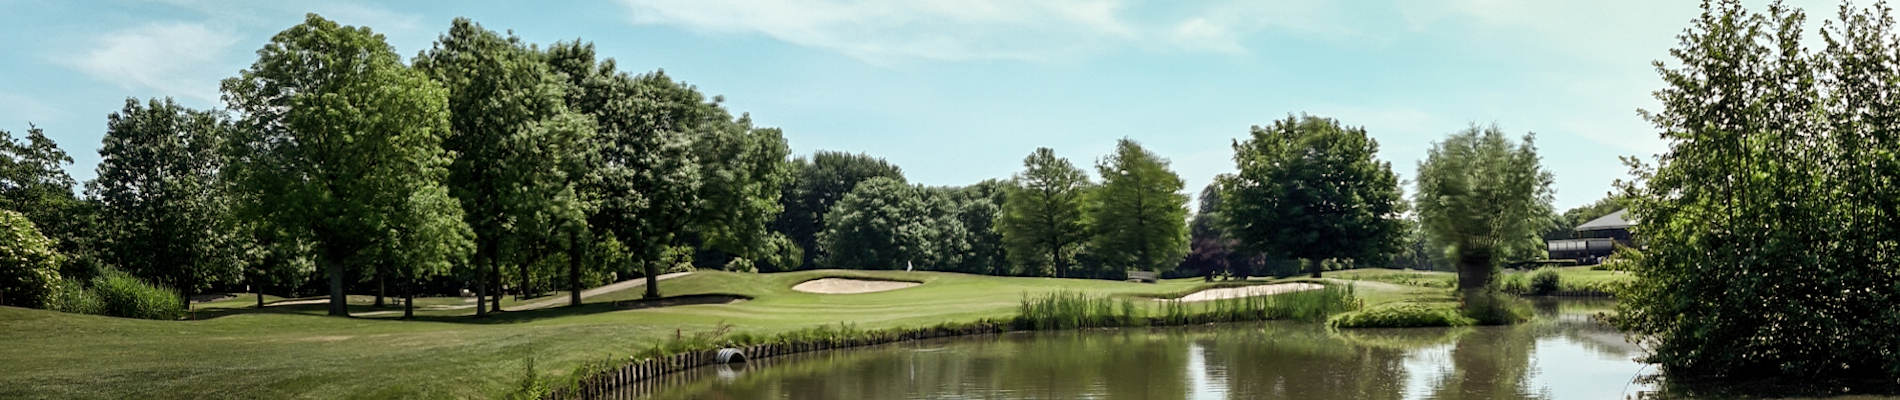 Baan van de Rijswijkse Golfclub